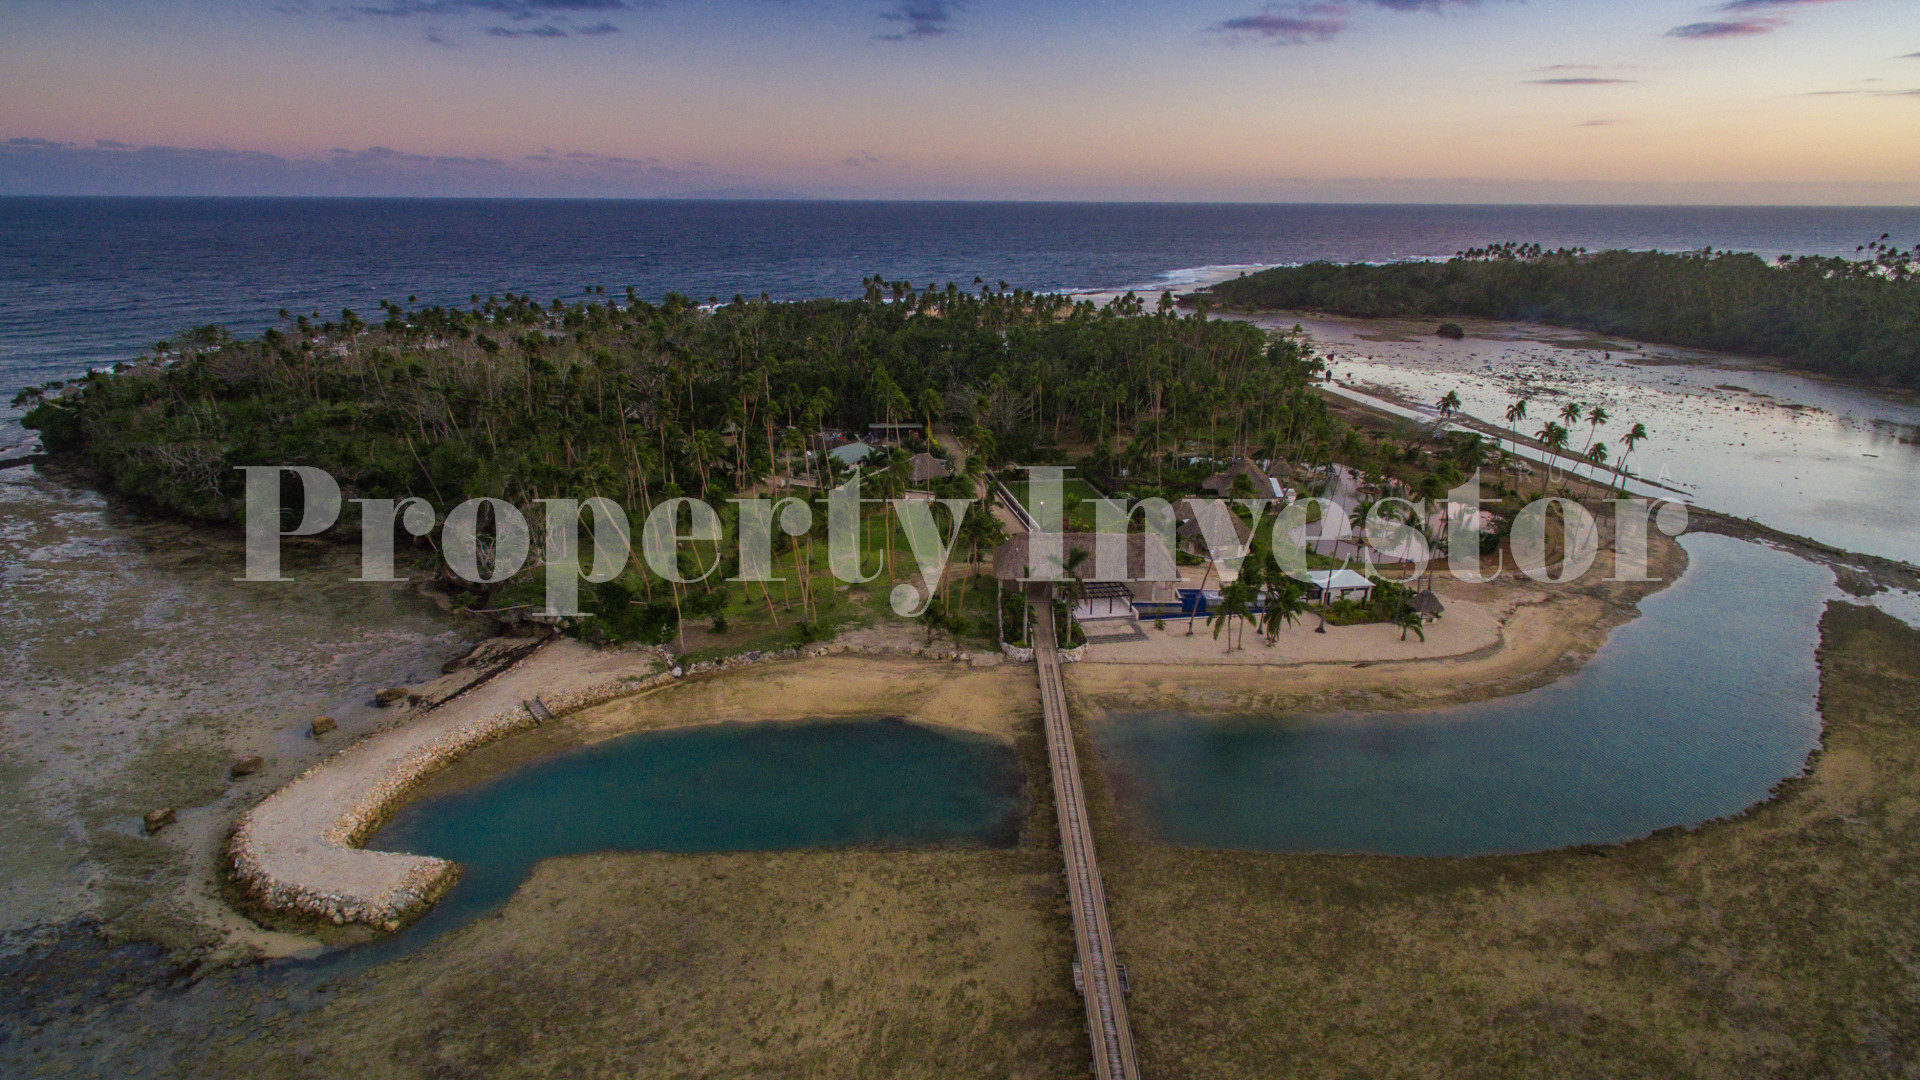 Земля в собственность на острове Фиджи (участок 15)